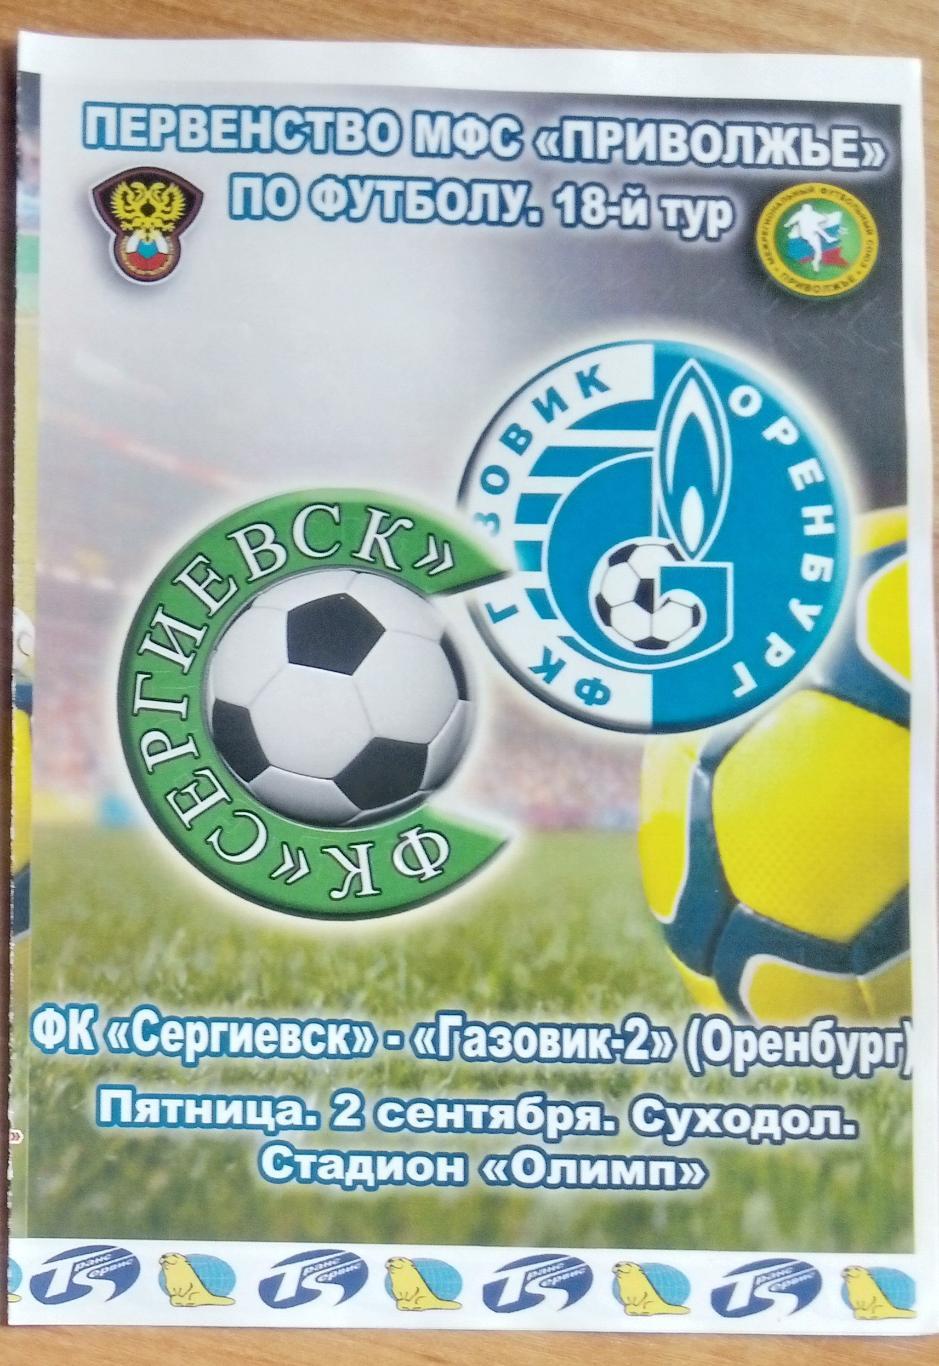 ФК Сергиевск - Газовик-2 Оренбург - 2011/2012 (ЛФЛ)